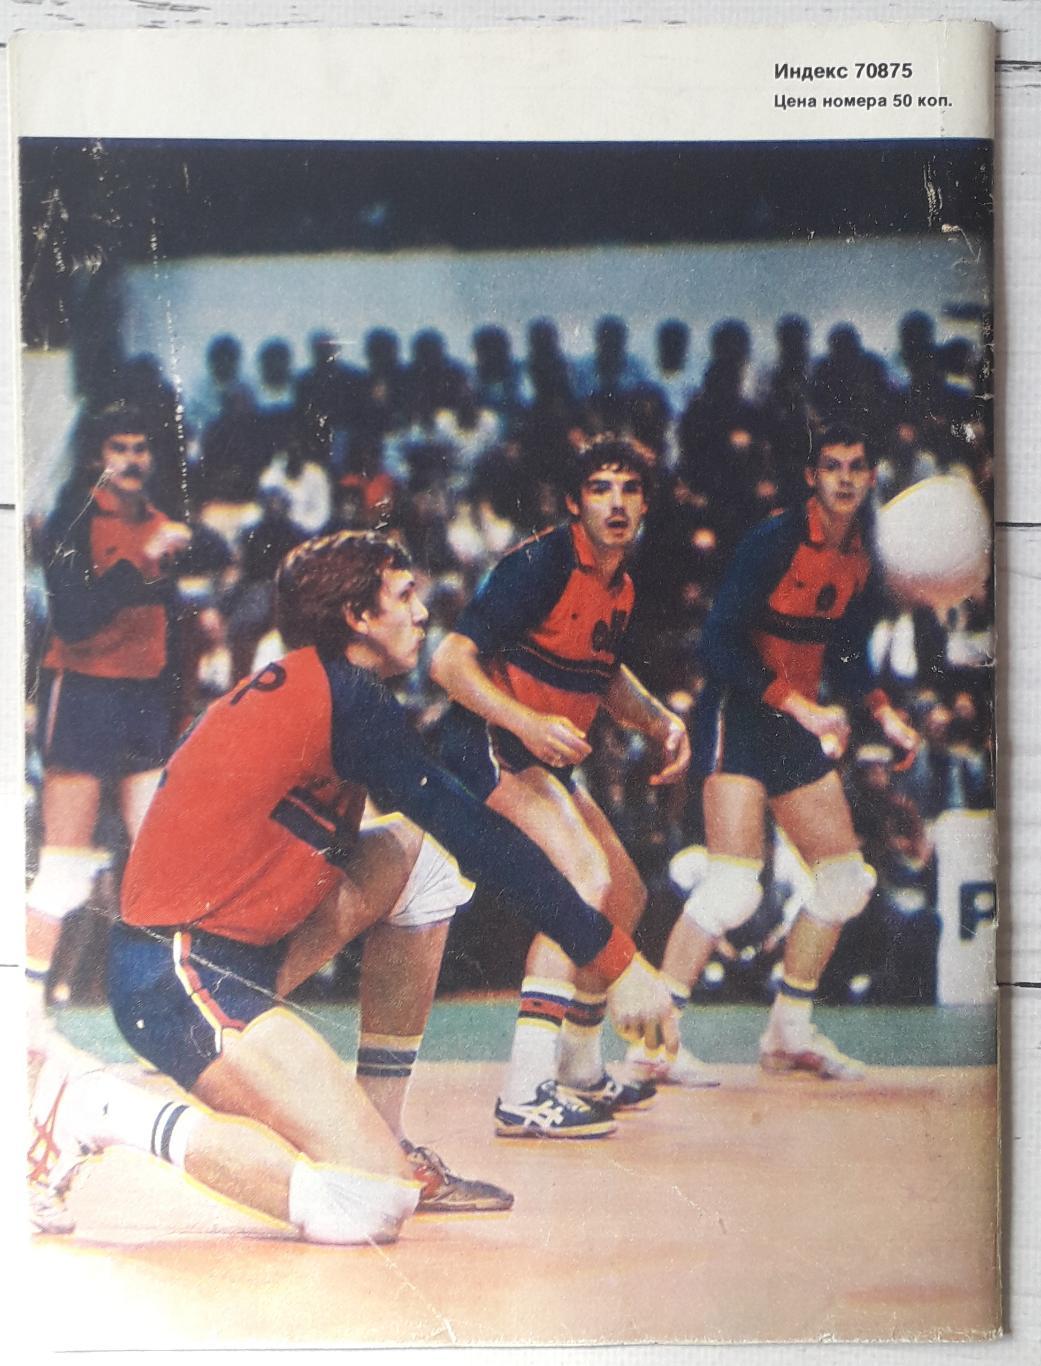 Журнал Спортивные игры 1986 №8 2